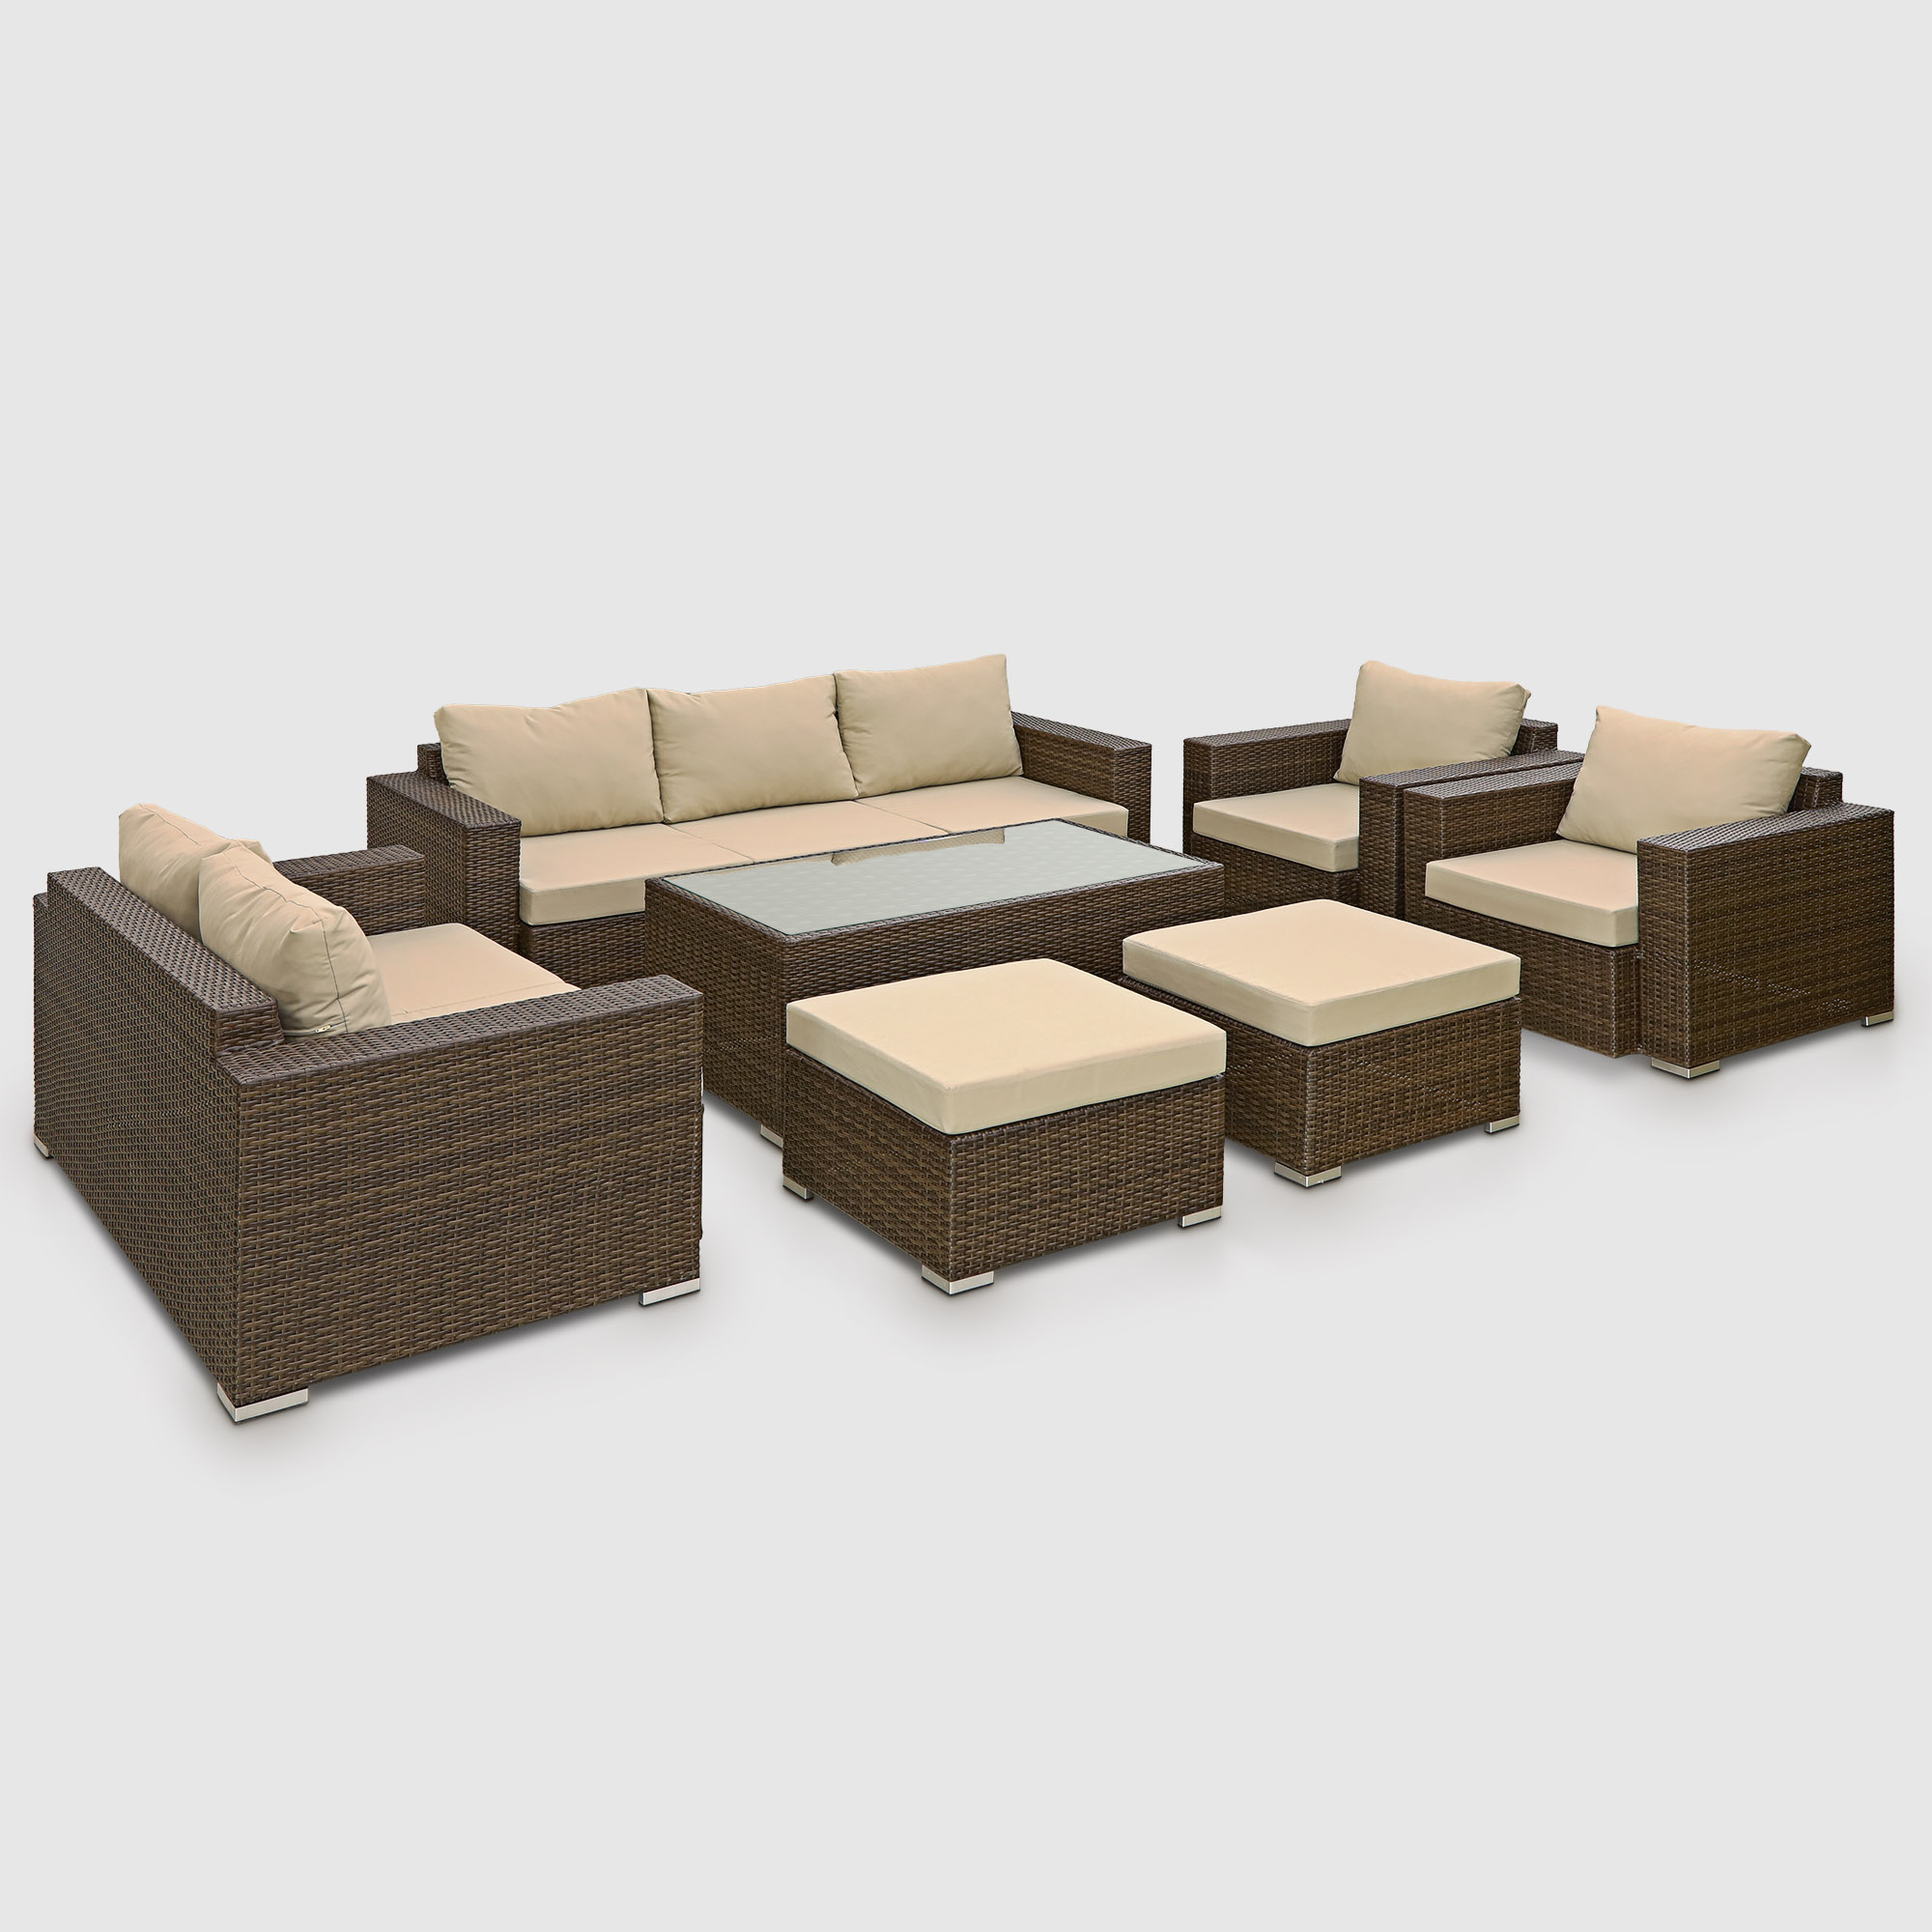 Комплект мебели Ns Rattan Cleo коричнево-бежевый 7 предметов, цвет коричневый, размер 199х68х72 - фото 1